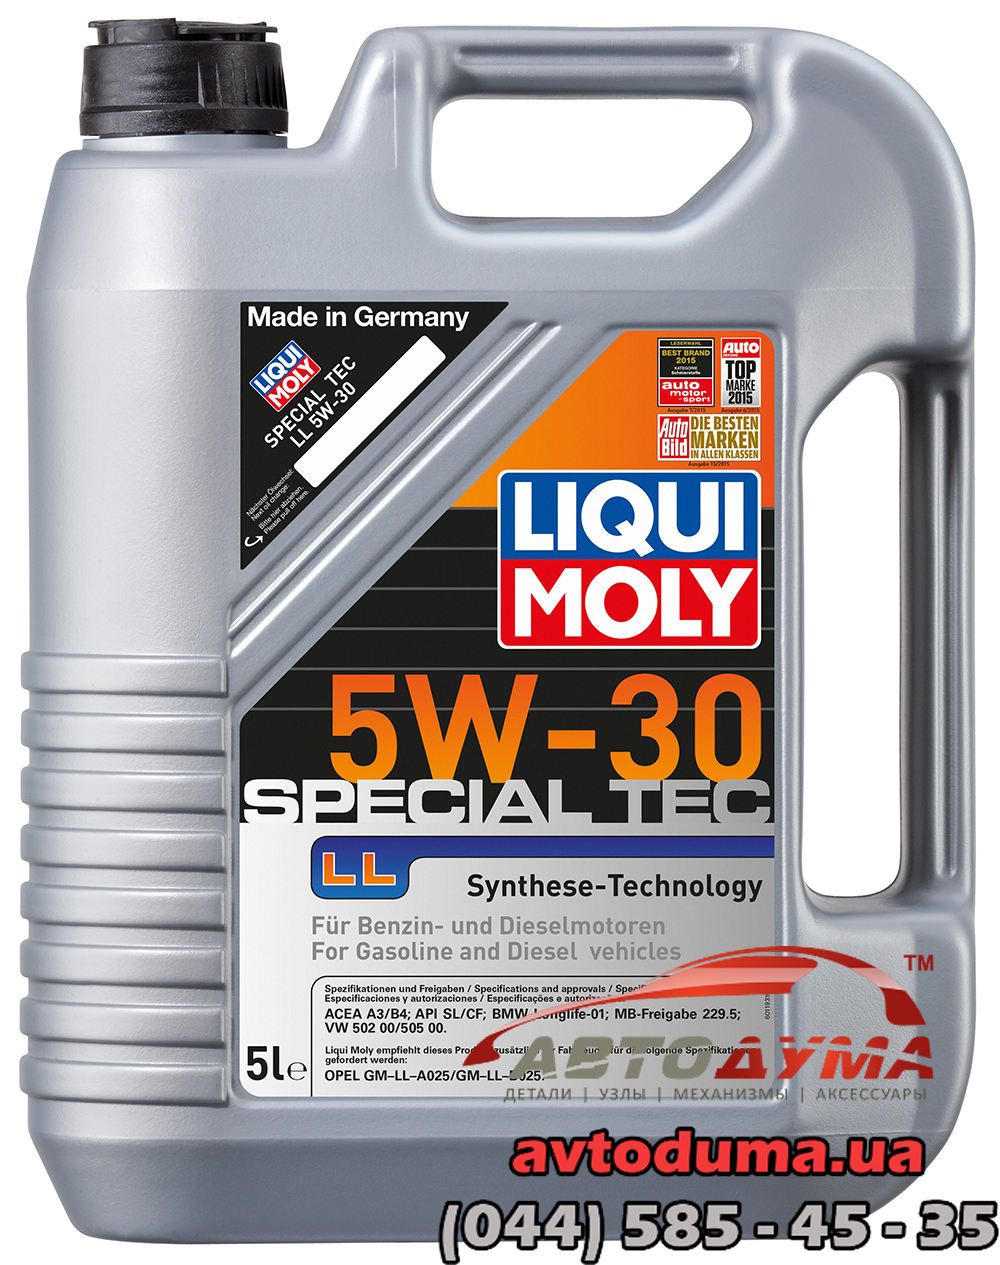 Liqui Moly Special Tec LL 5W-30, 5л